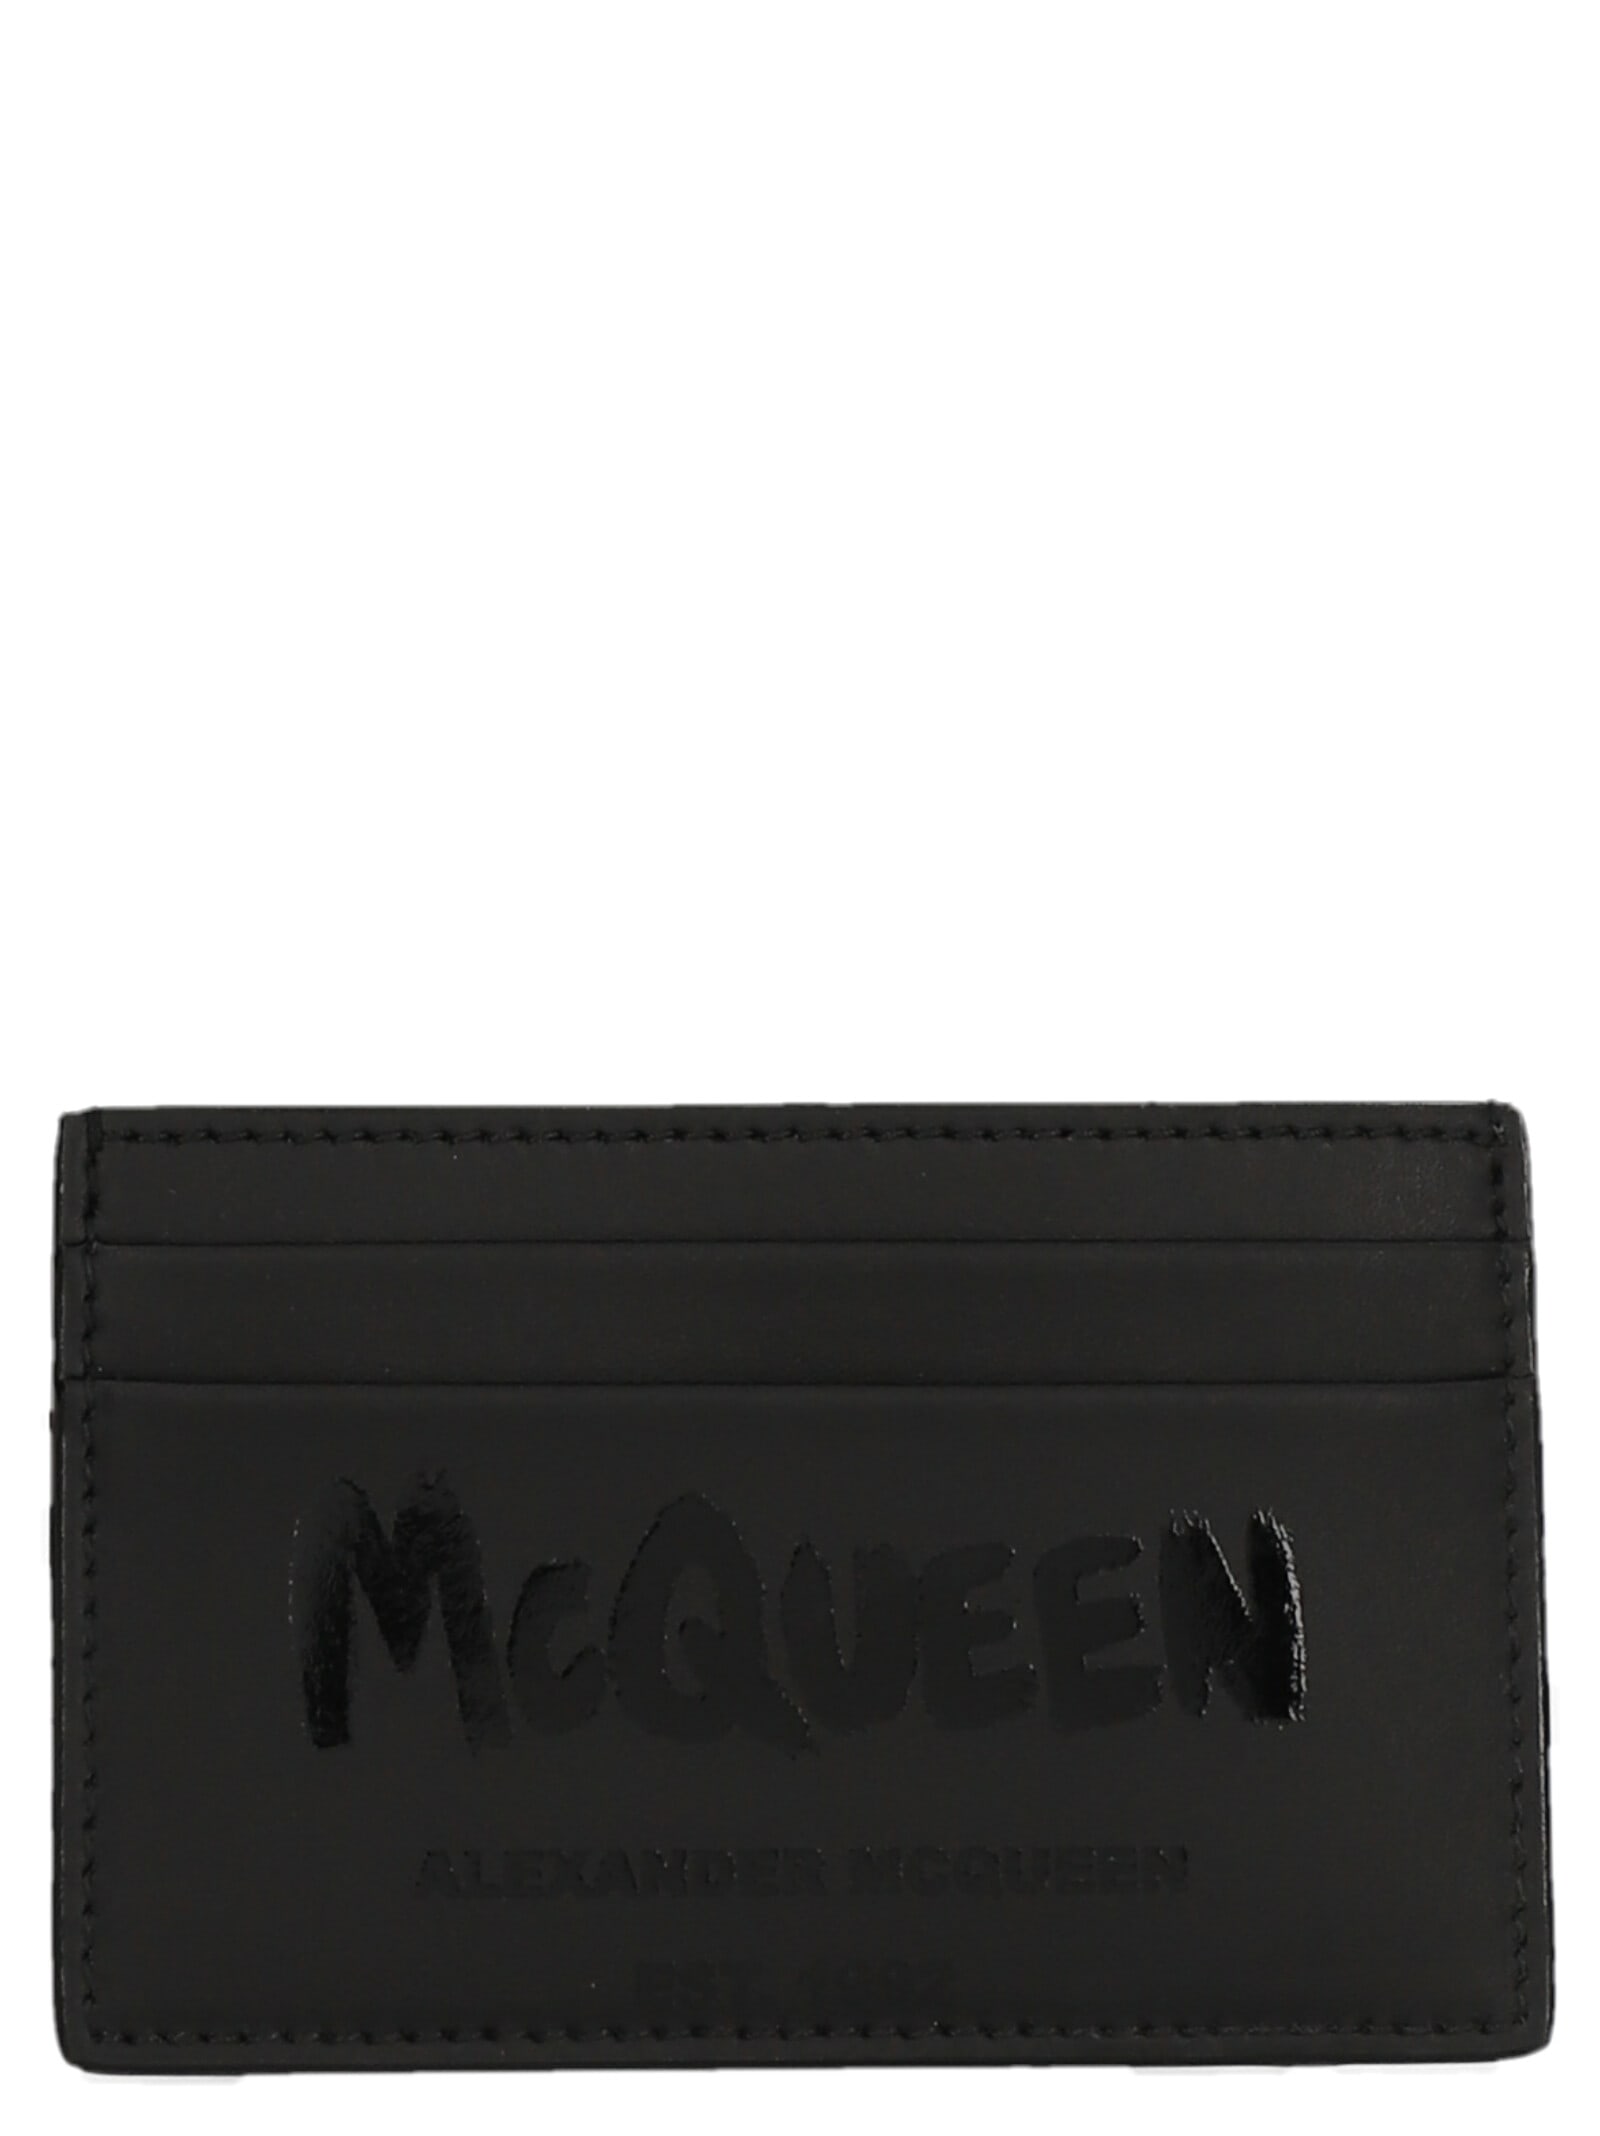 Alexander McQueen 6cc Card Holder